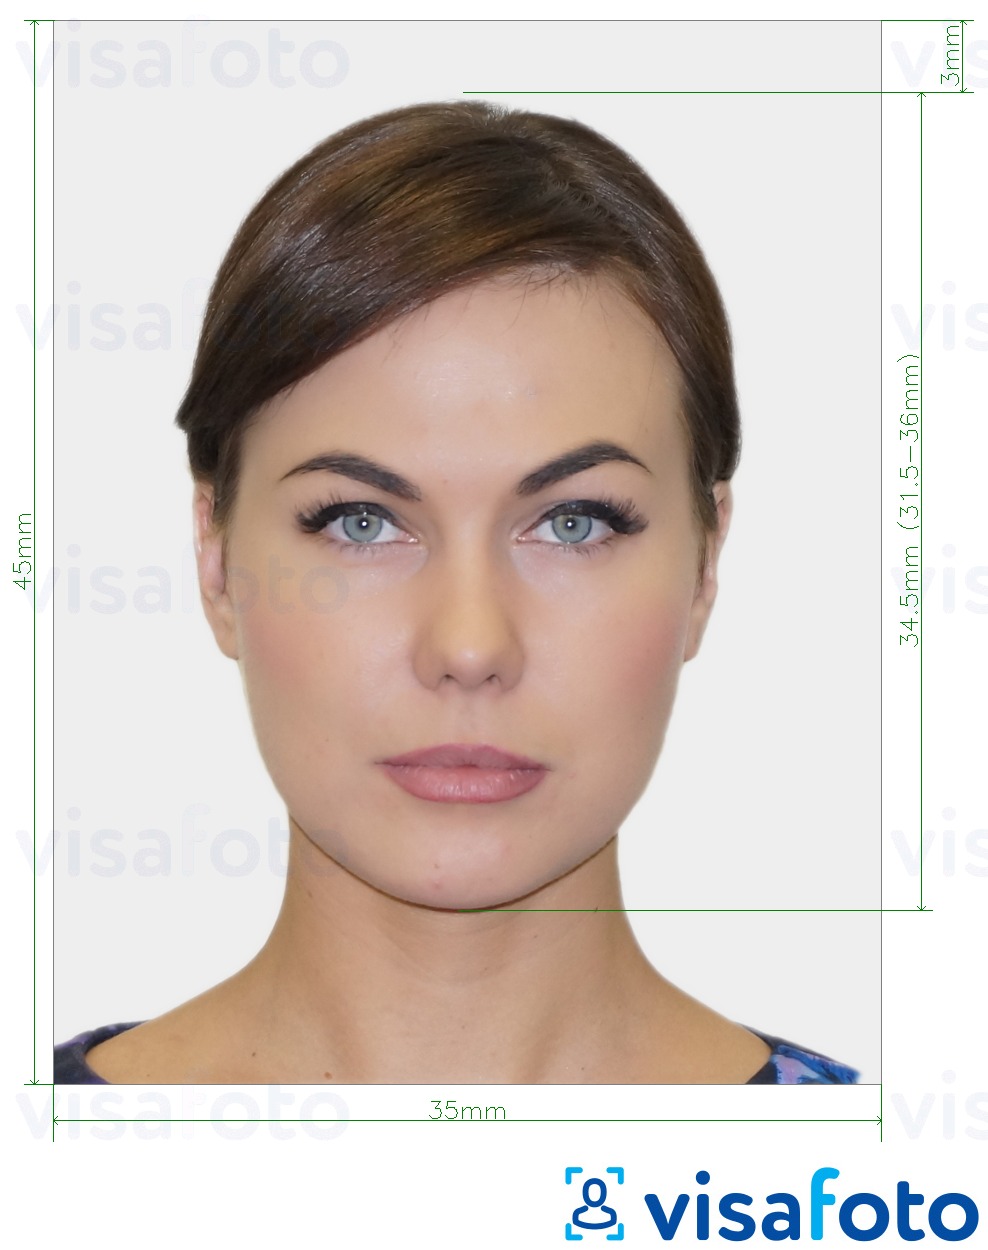 Príklad fotografie pre Belgicko elektronický preukaz totožnosti (eID) 35x45 mm (3,5 x 4,5 cm) s presnou špecifikáciou veľkosti